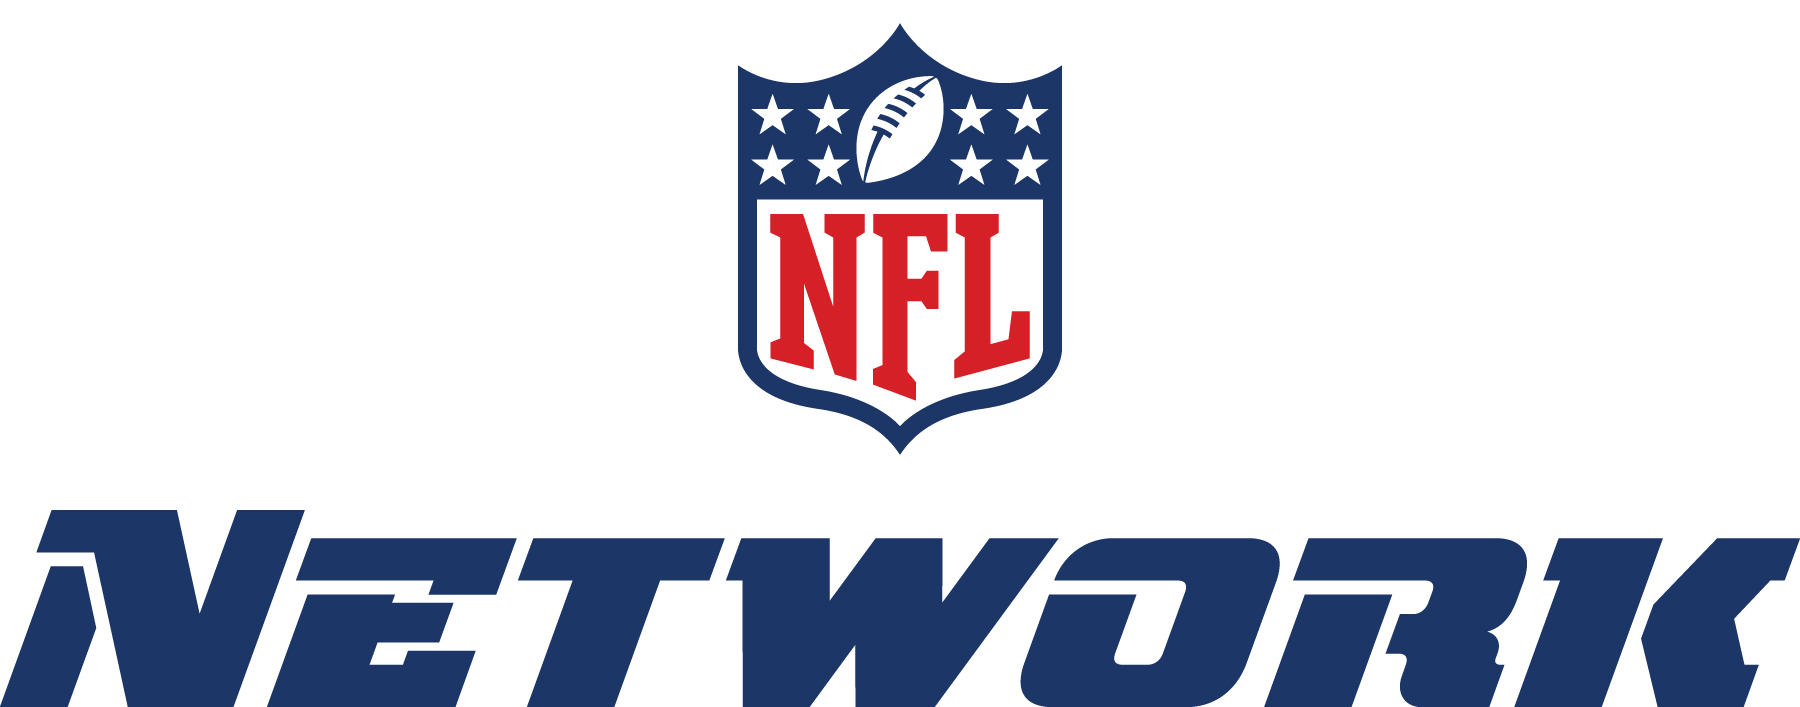 NFL Network, RedZone channels go dark on DISH Network ...